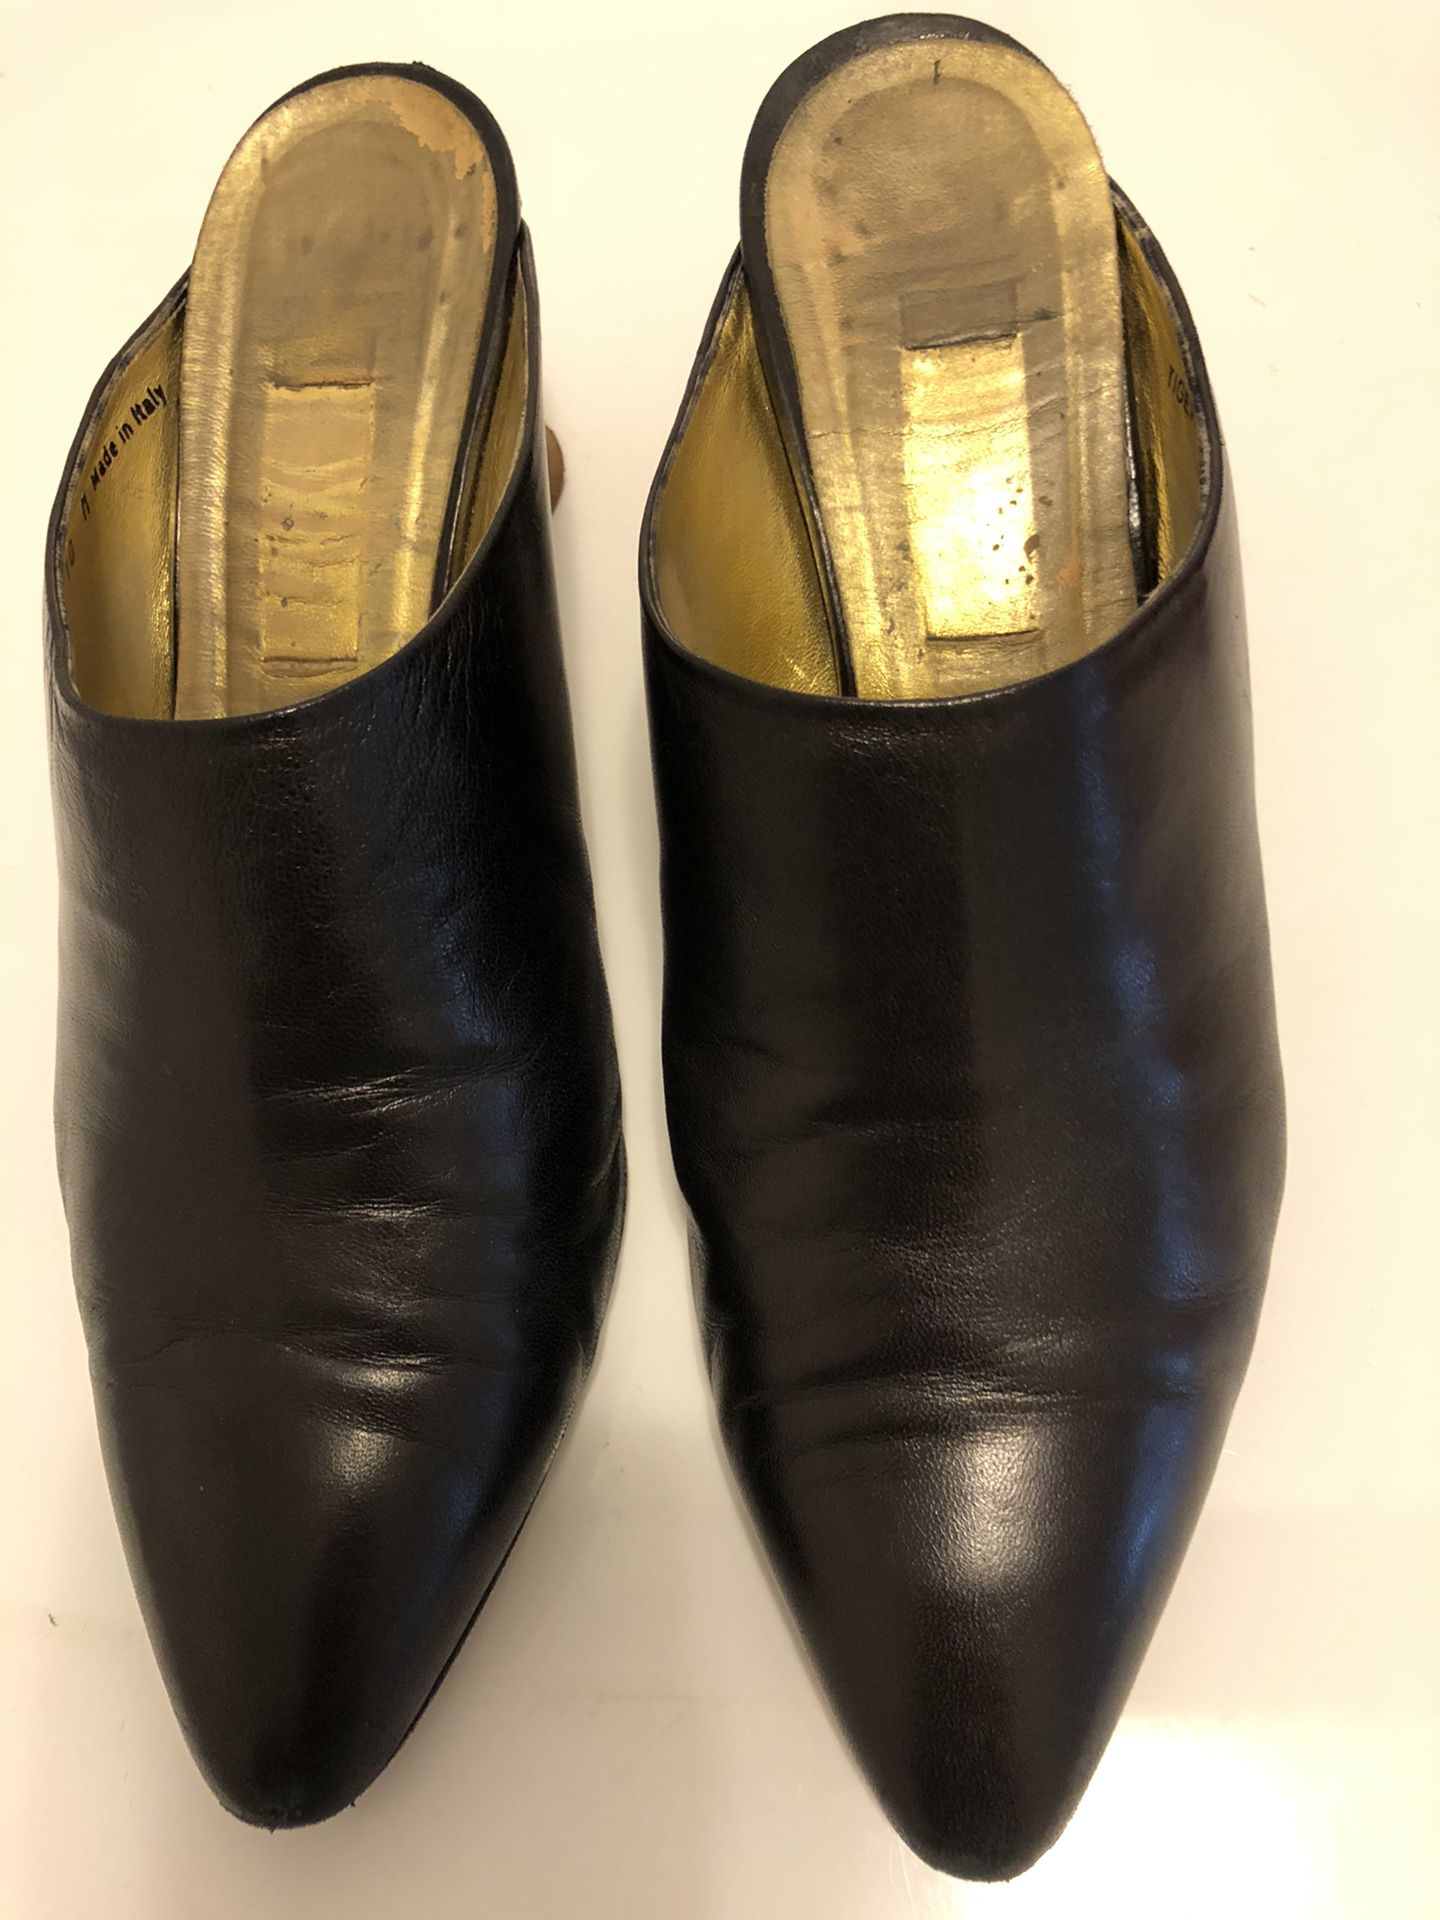 Women’s Black Leather 2 1/2 inch Heels